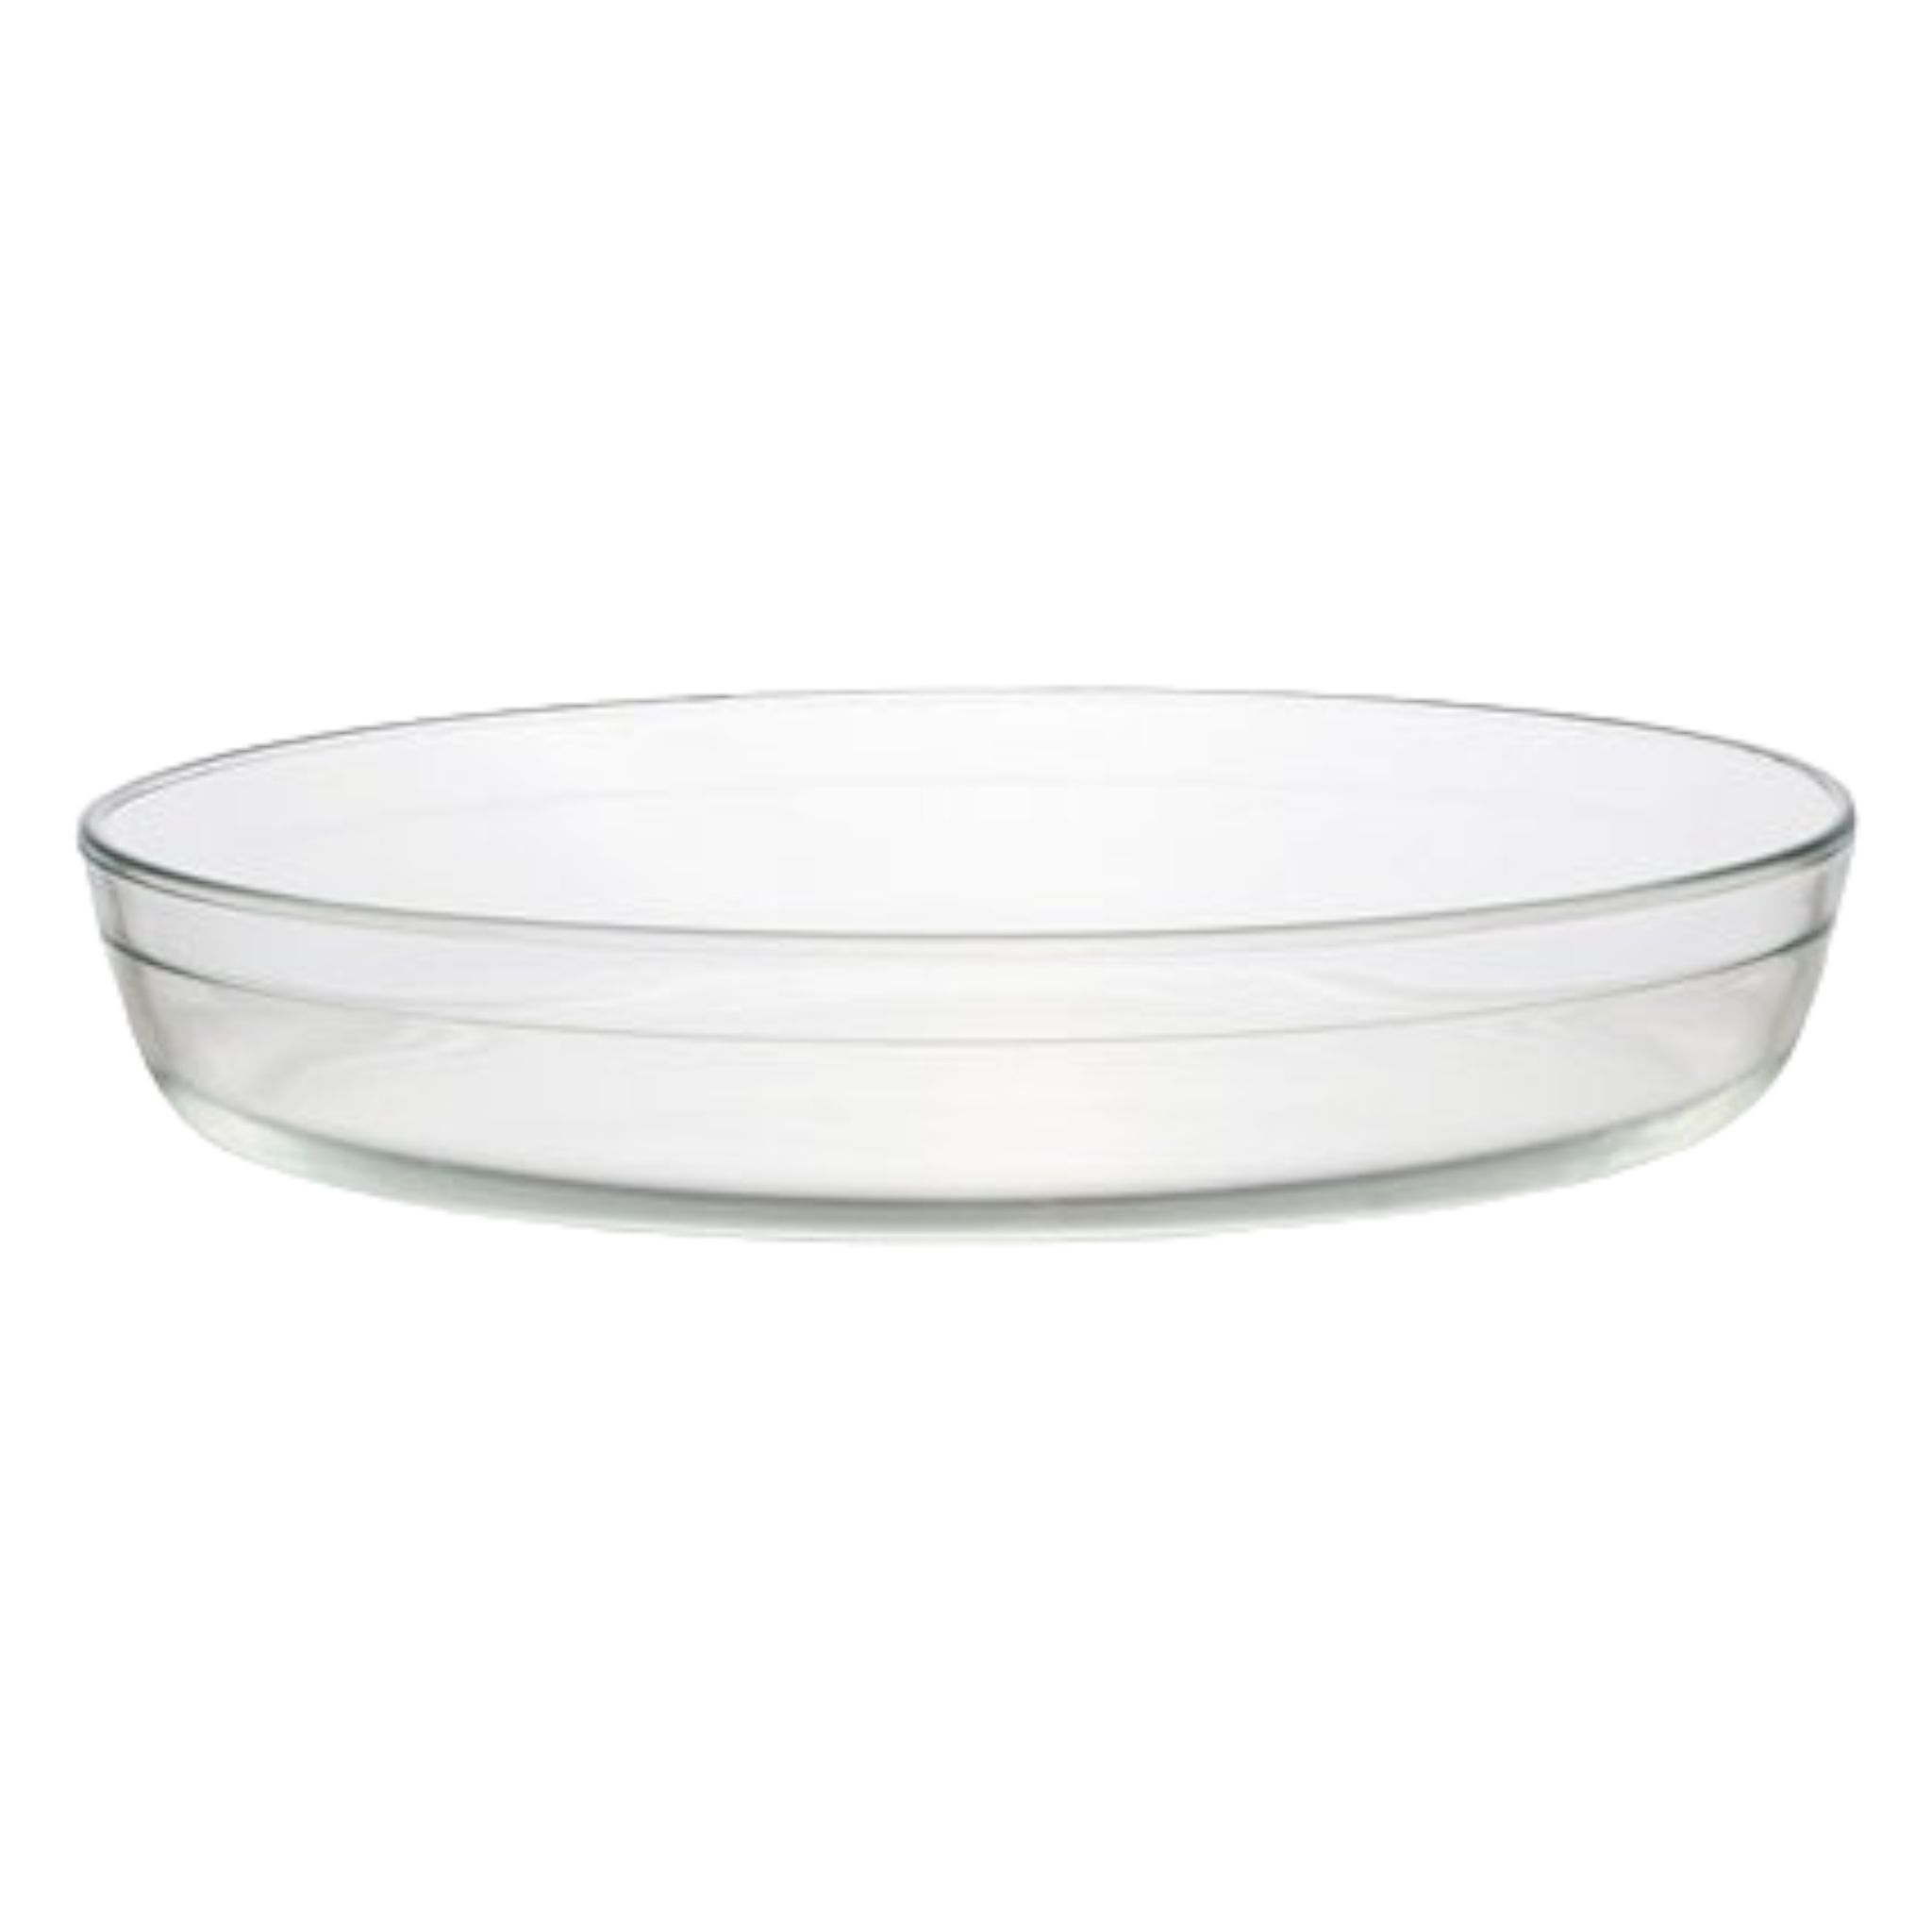 Aqua Glass Baking Tray Oval No Lid 3L 10348